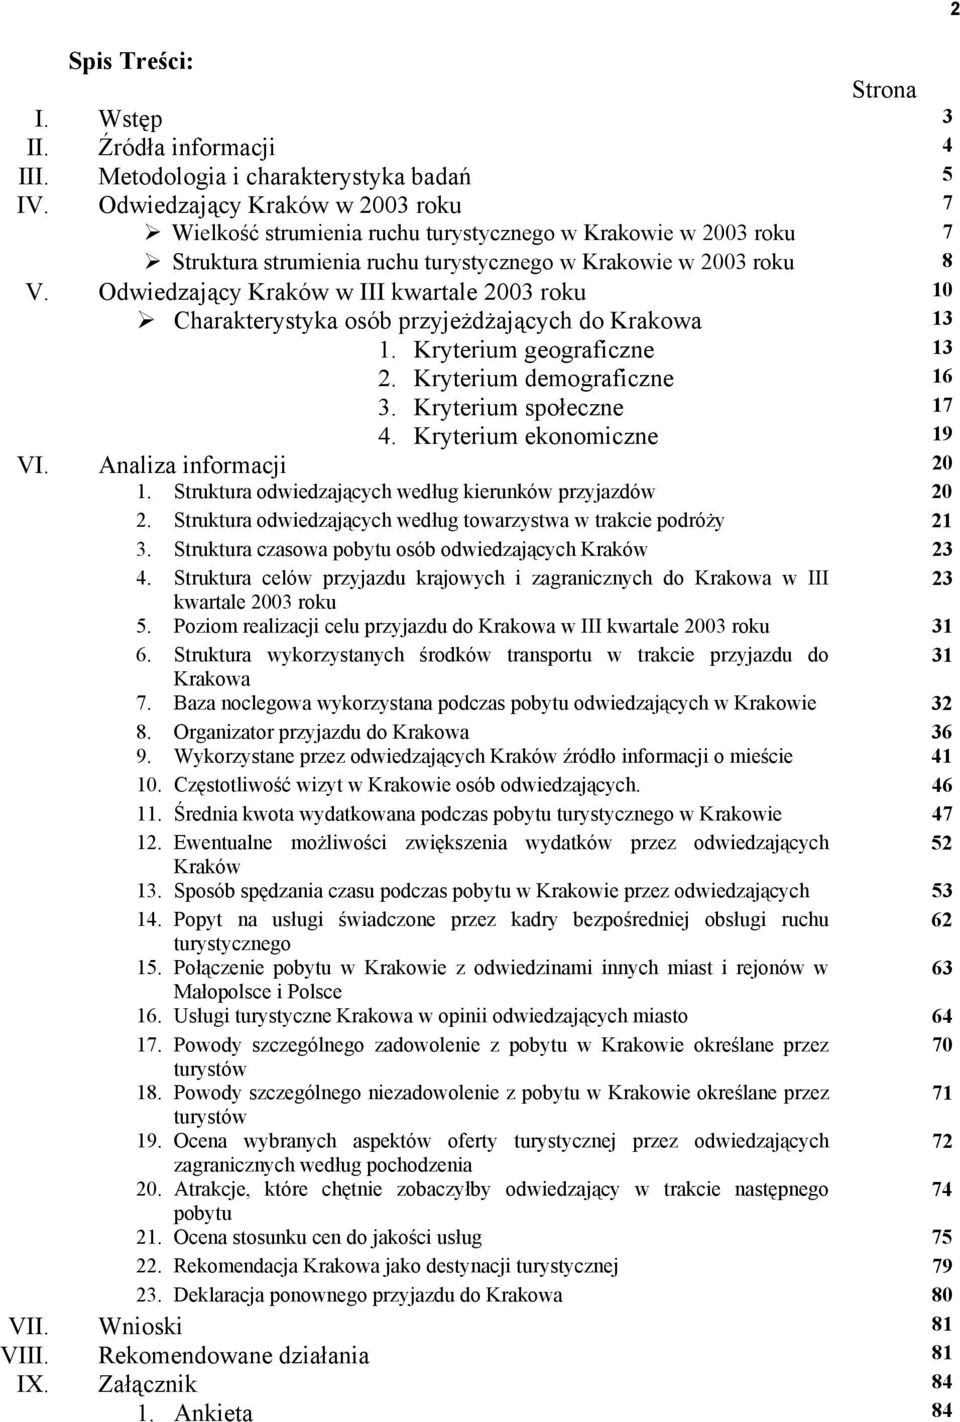 Odwiedzający Kraków w III kwartale 2003 roku 10 Charakterystyka osób przyjeżdżających do Krakowa 13 1. Kryterium geograficzne 13 2. Kryterium demograficzne 16 3. Kryterium społeczne 17 4.